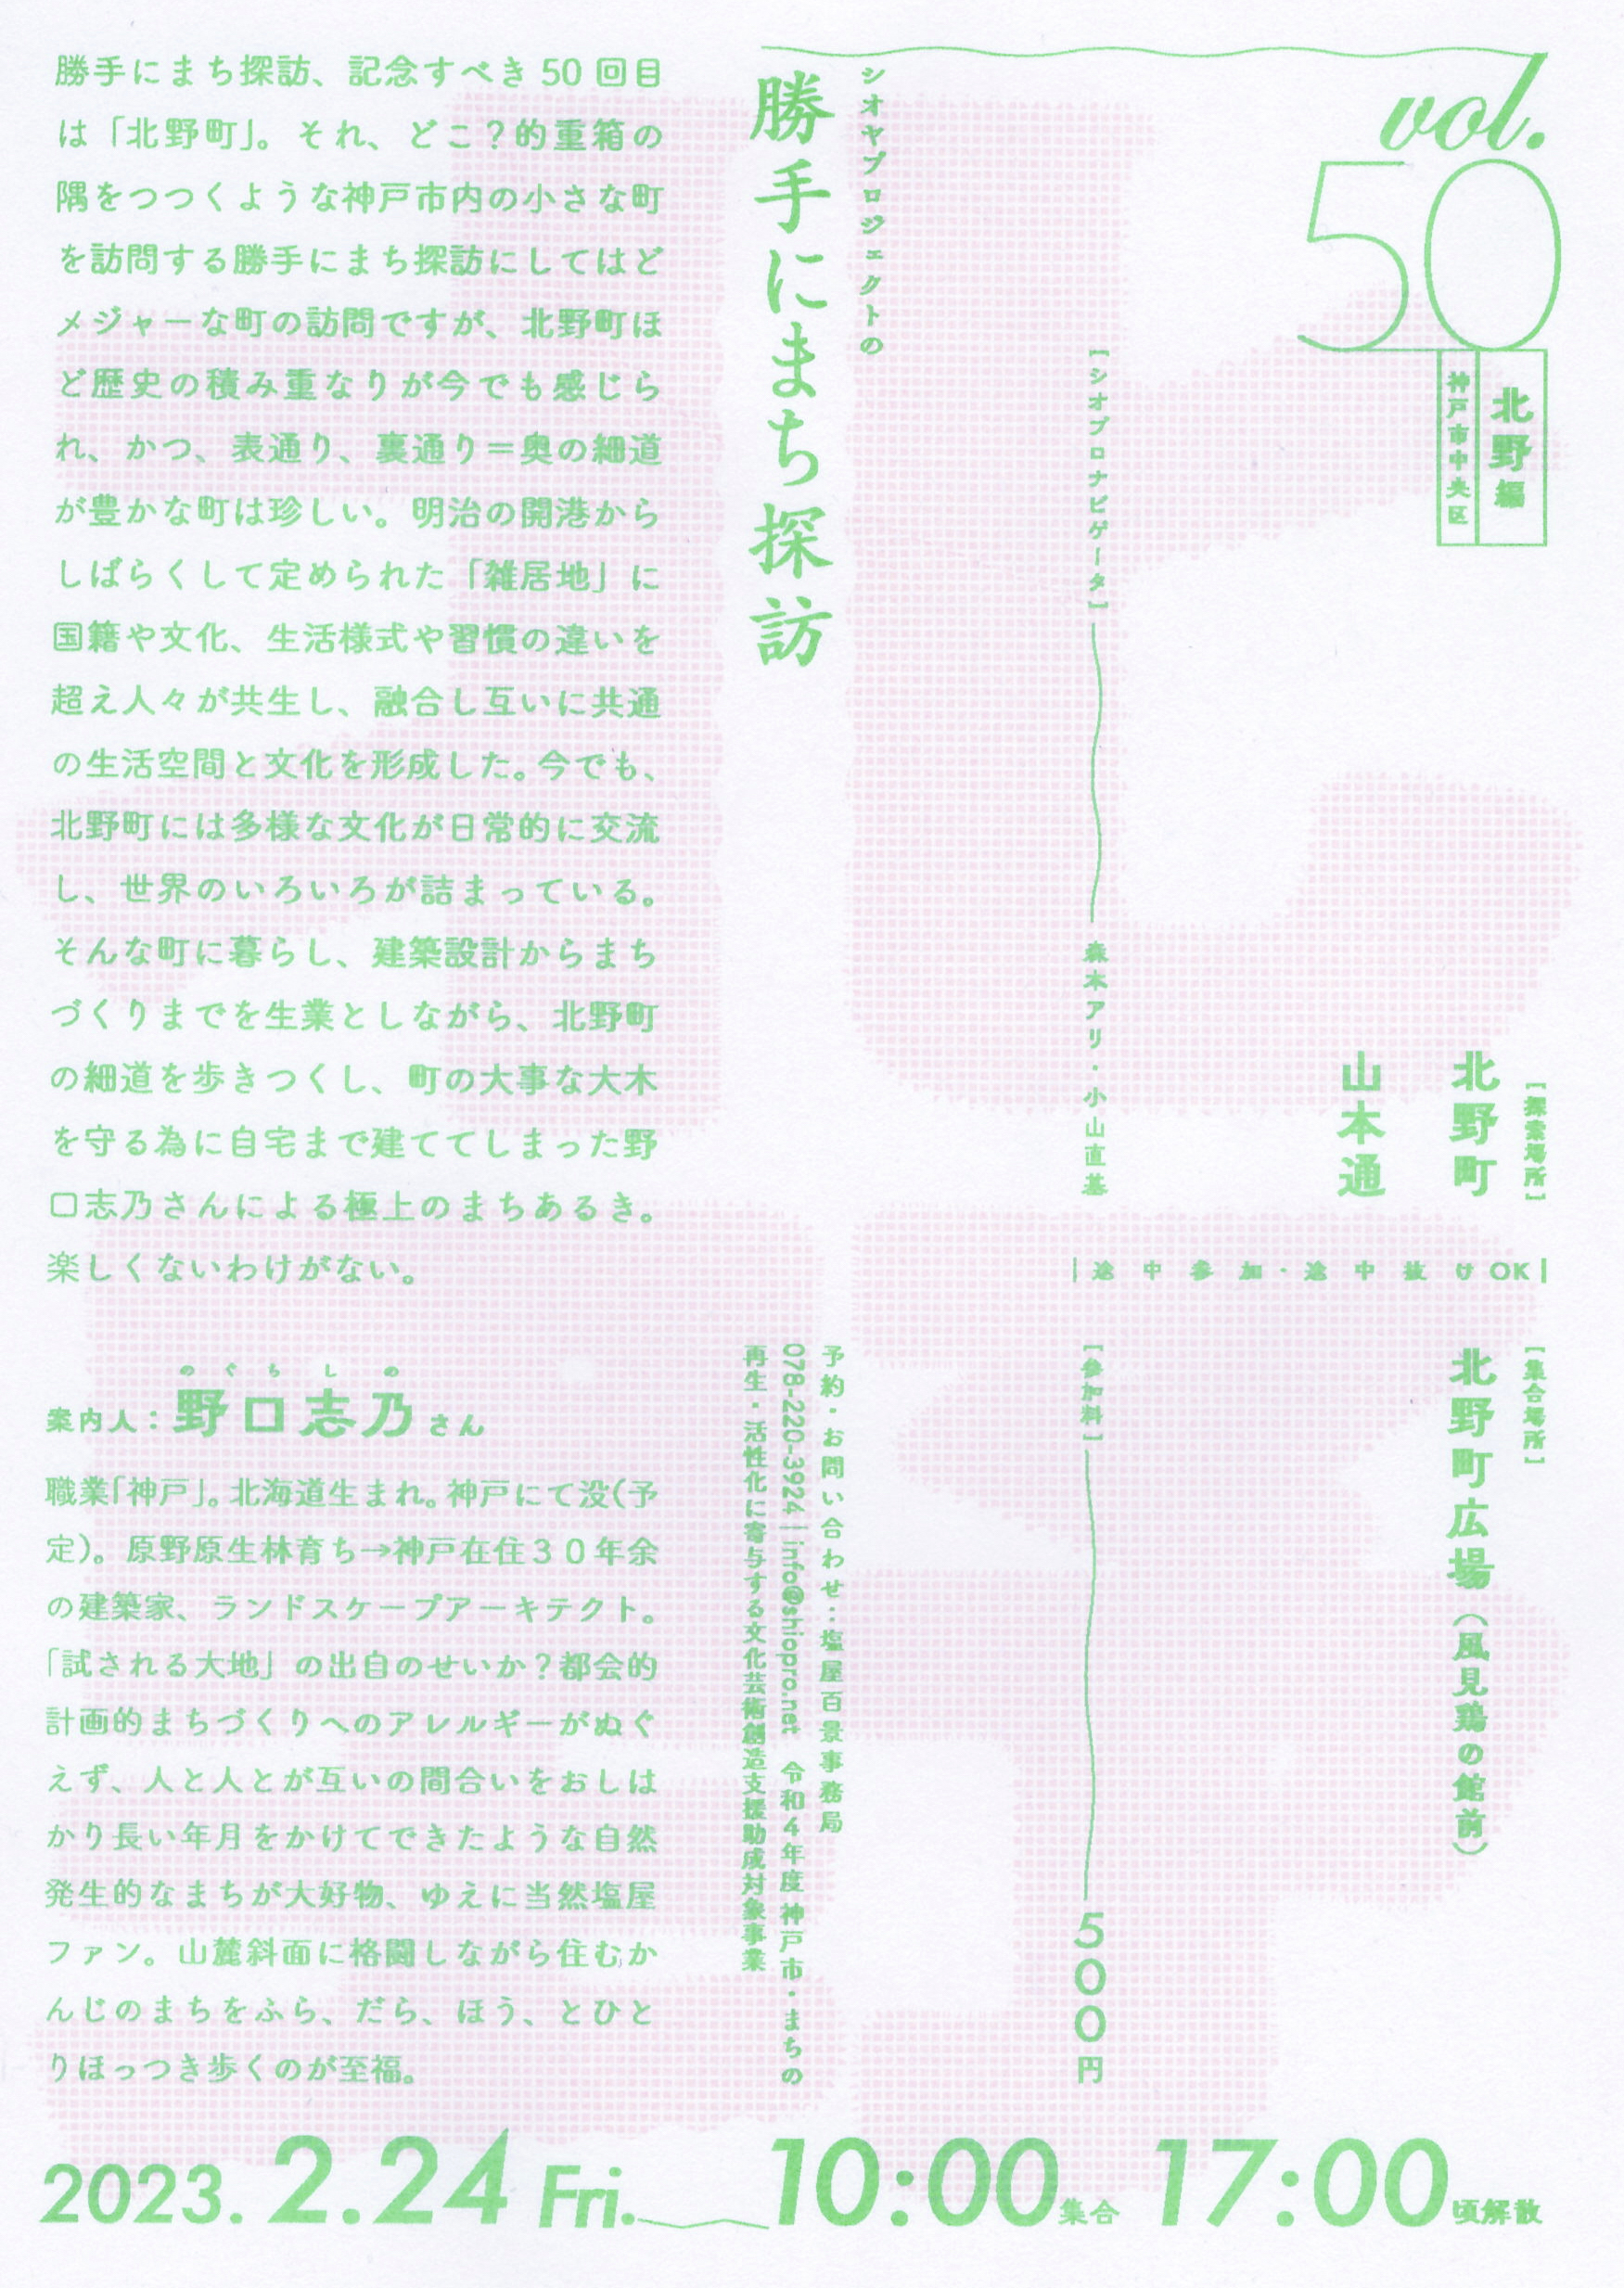 2/24(金) シオヤプロジェクトの勝手にまち探訪 vol.50 北野編